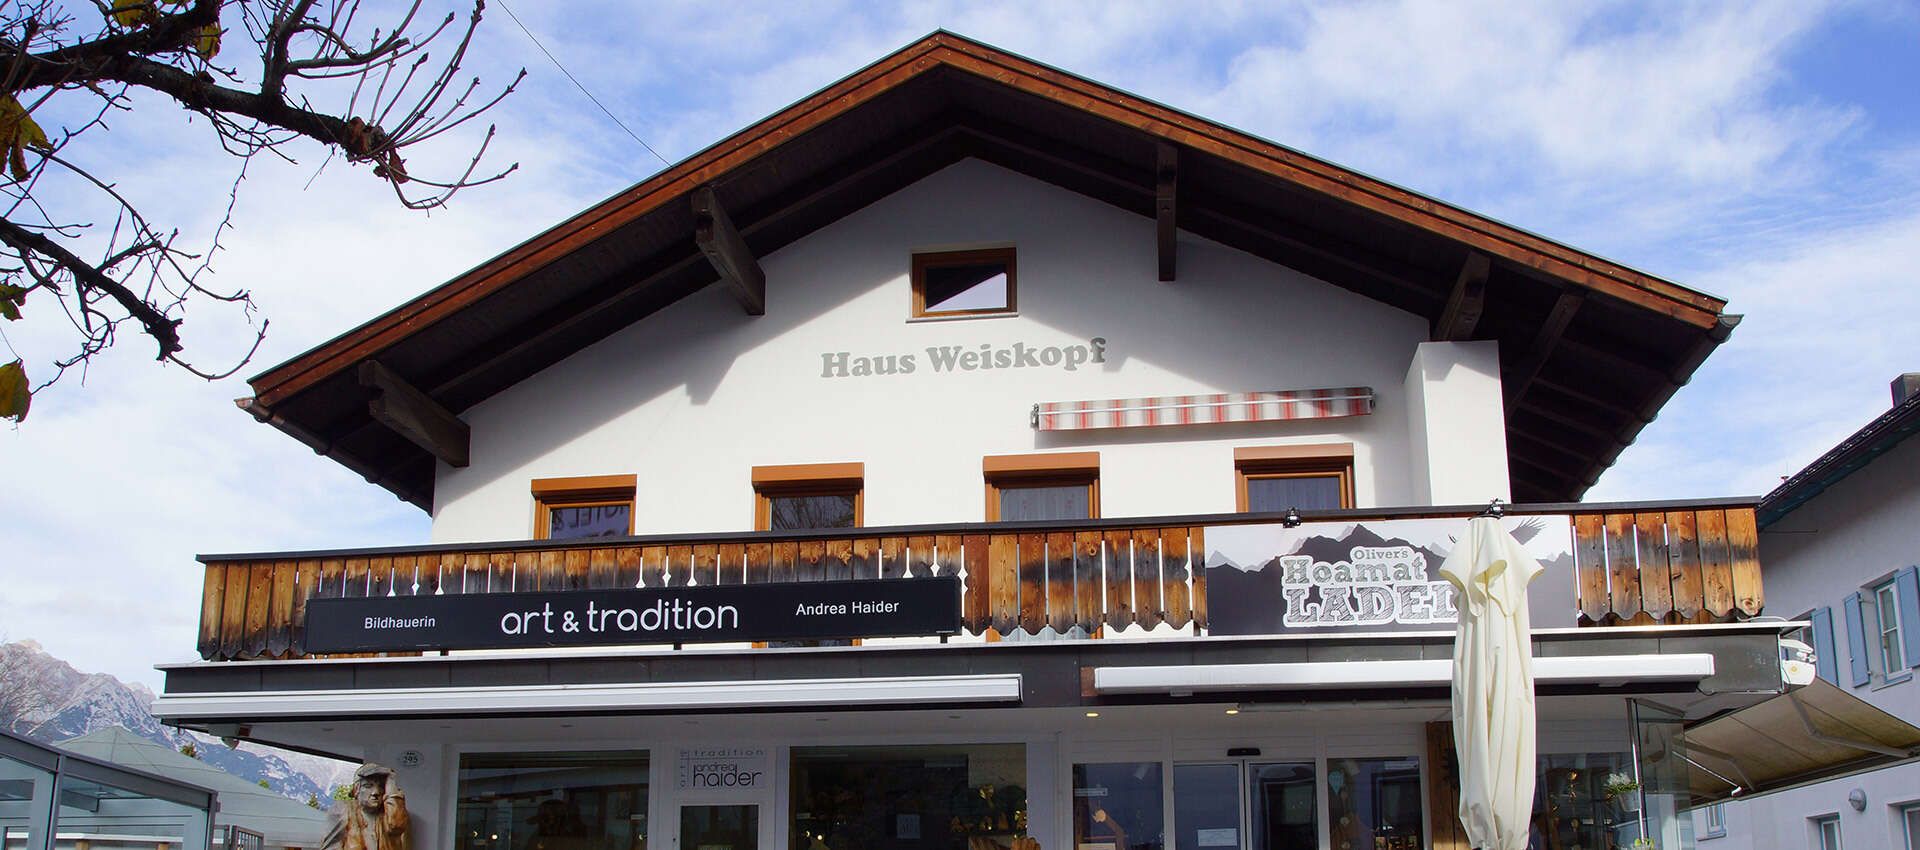 House Weiskopf in Seefeld in Tyrol